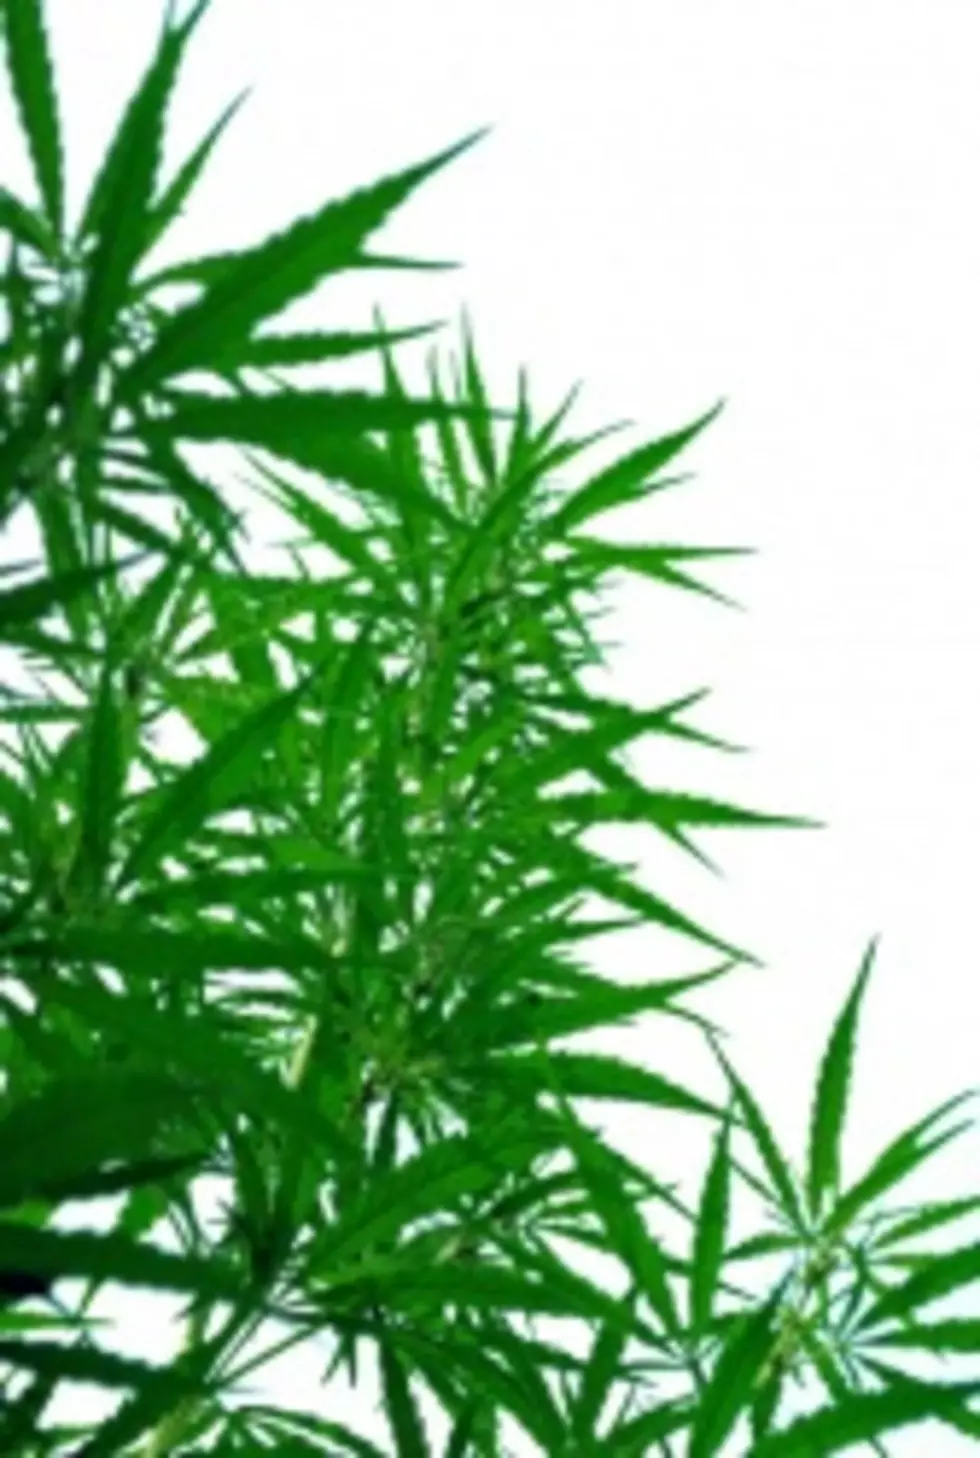 Oregon Cities Ban Medical Marijuana Use